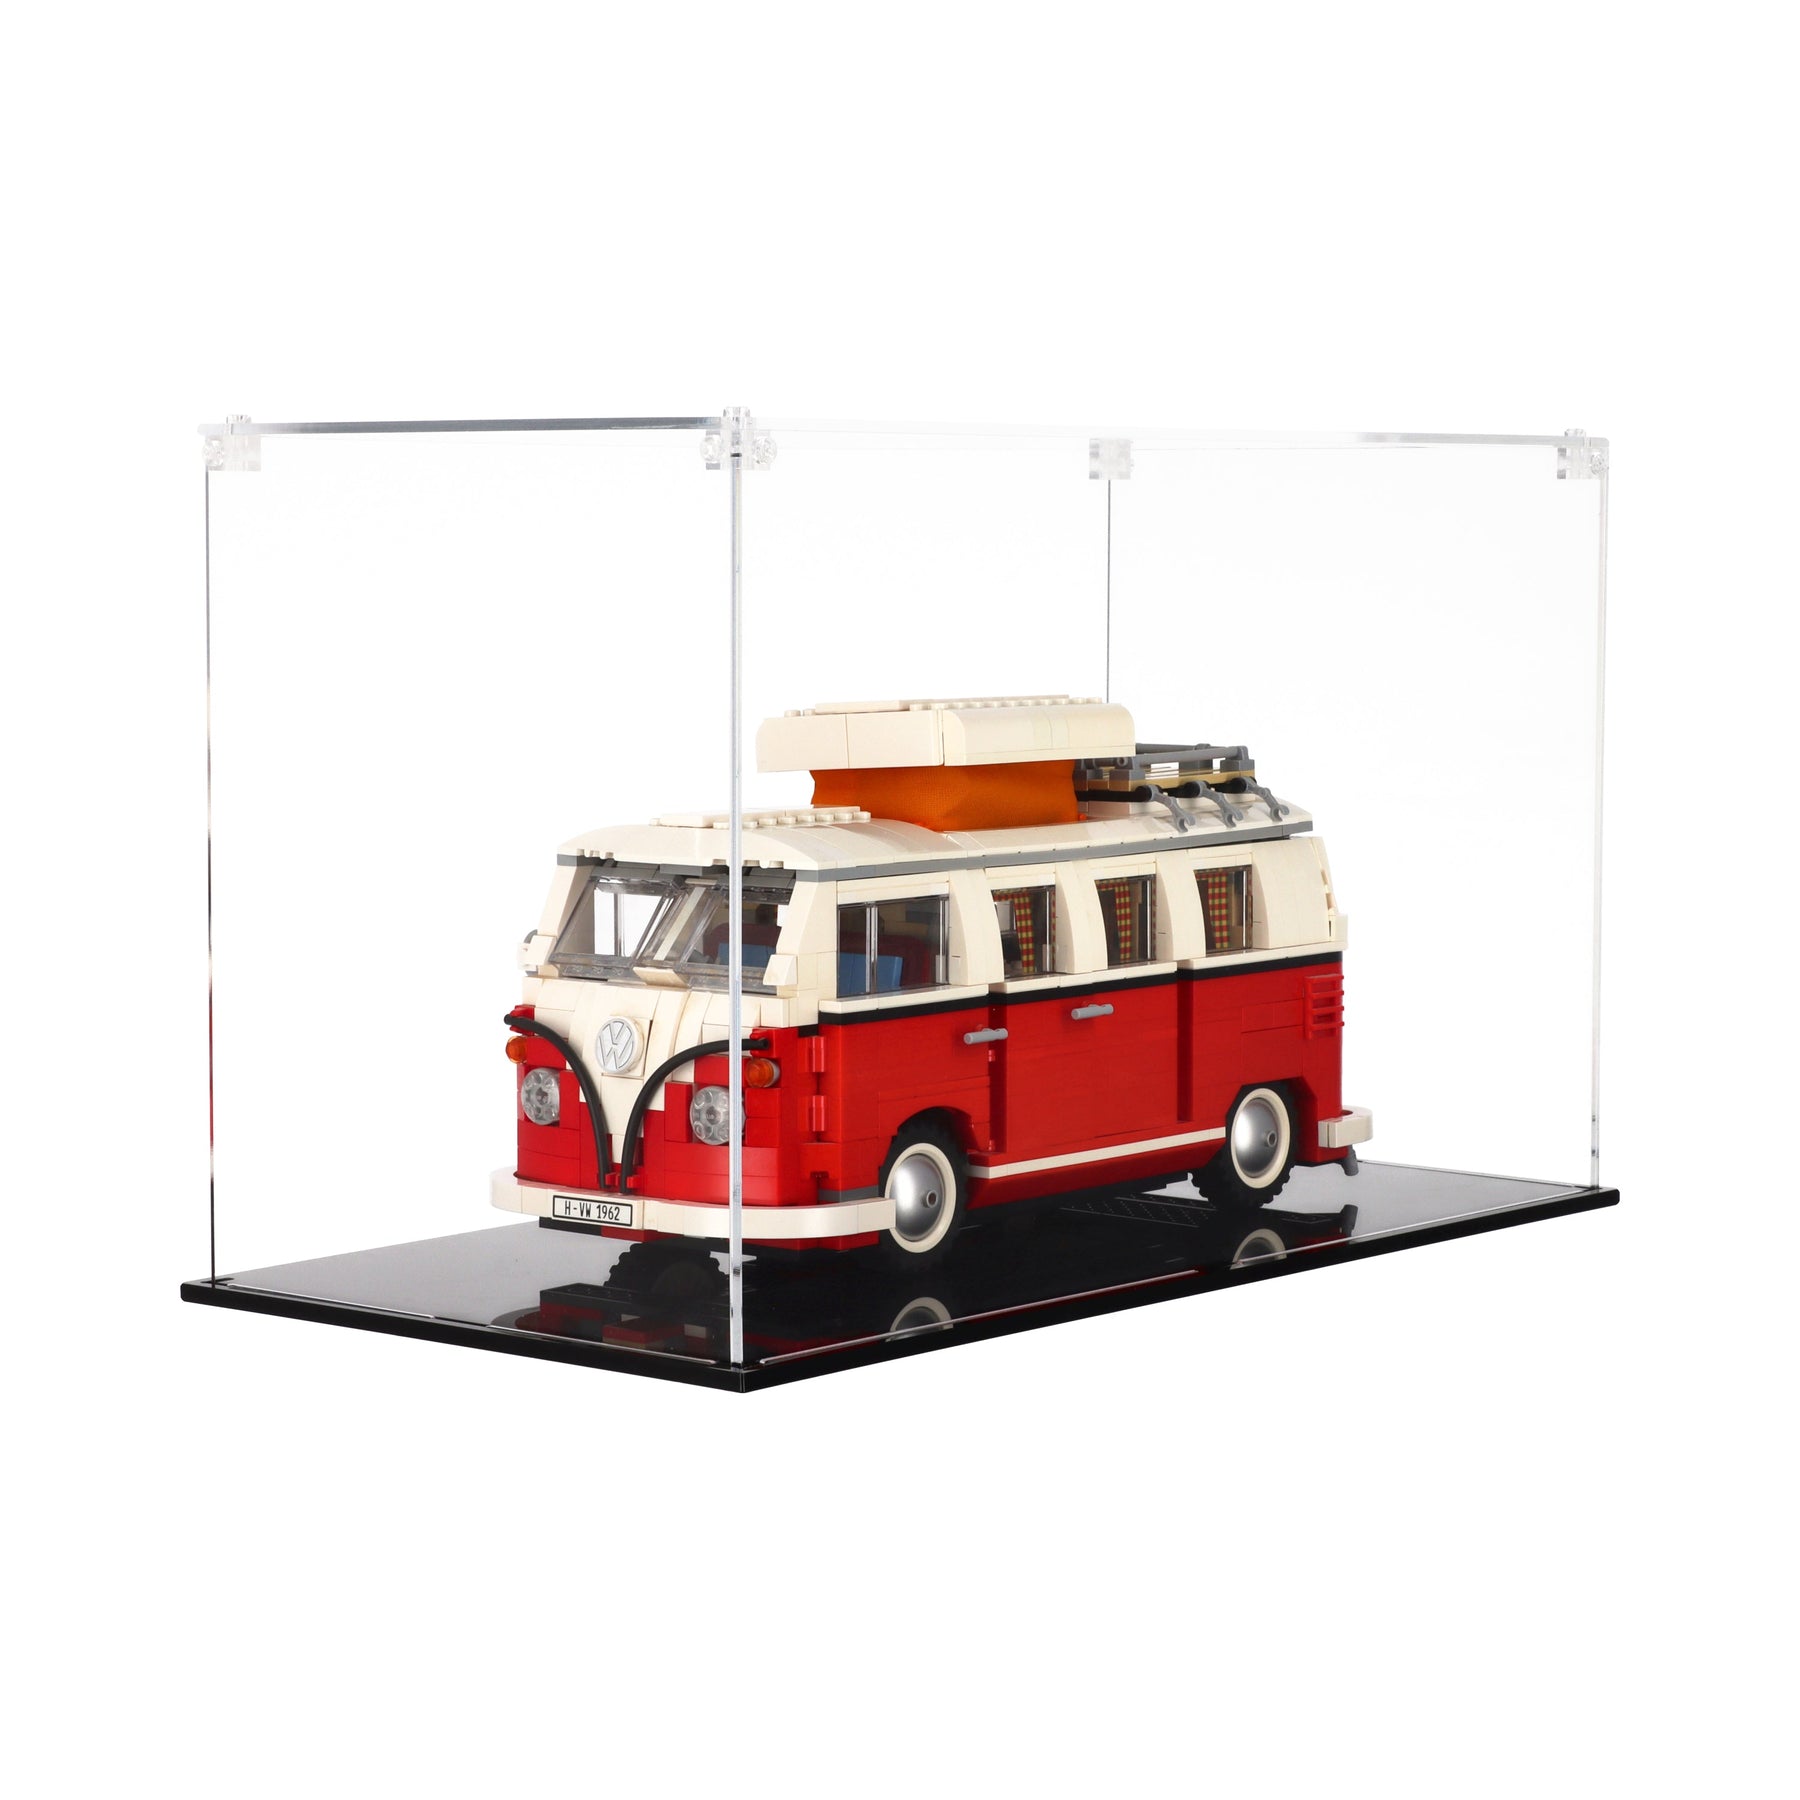 LEGO Acrylic Display Nameplate for Volkswagen T1 Camper Van #10220